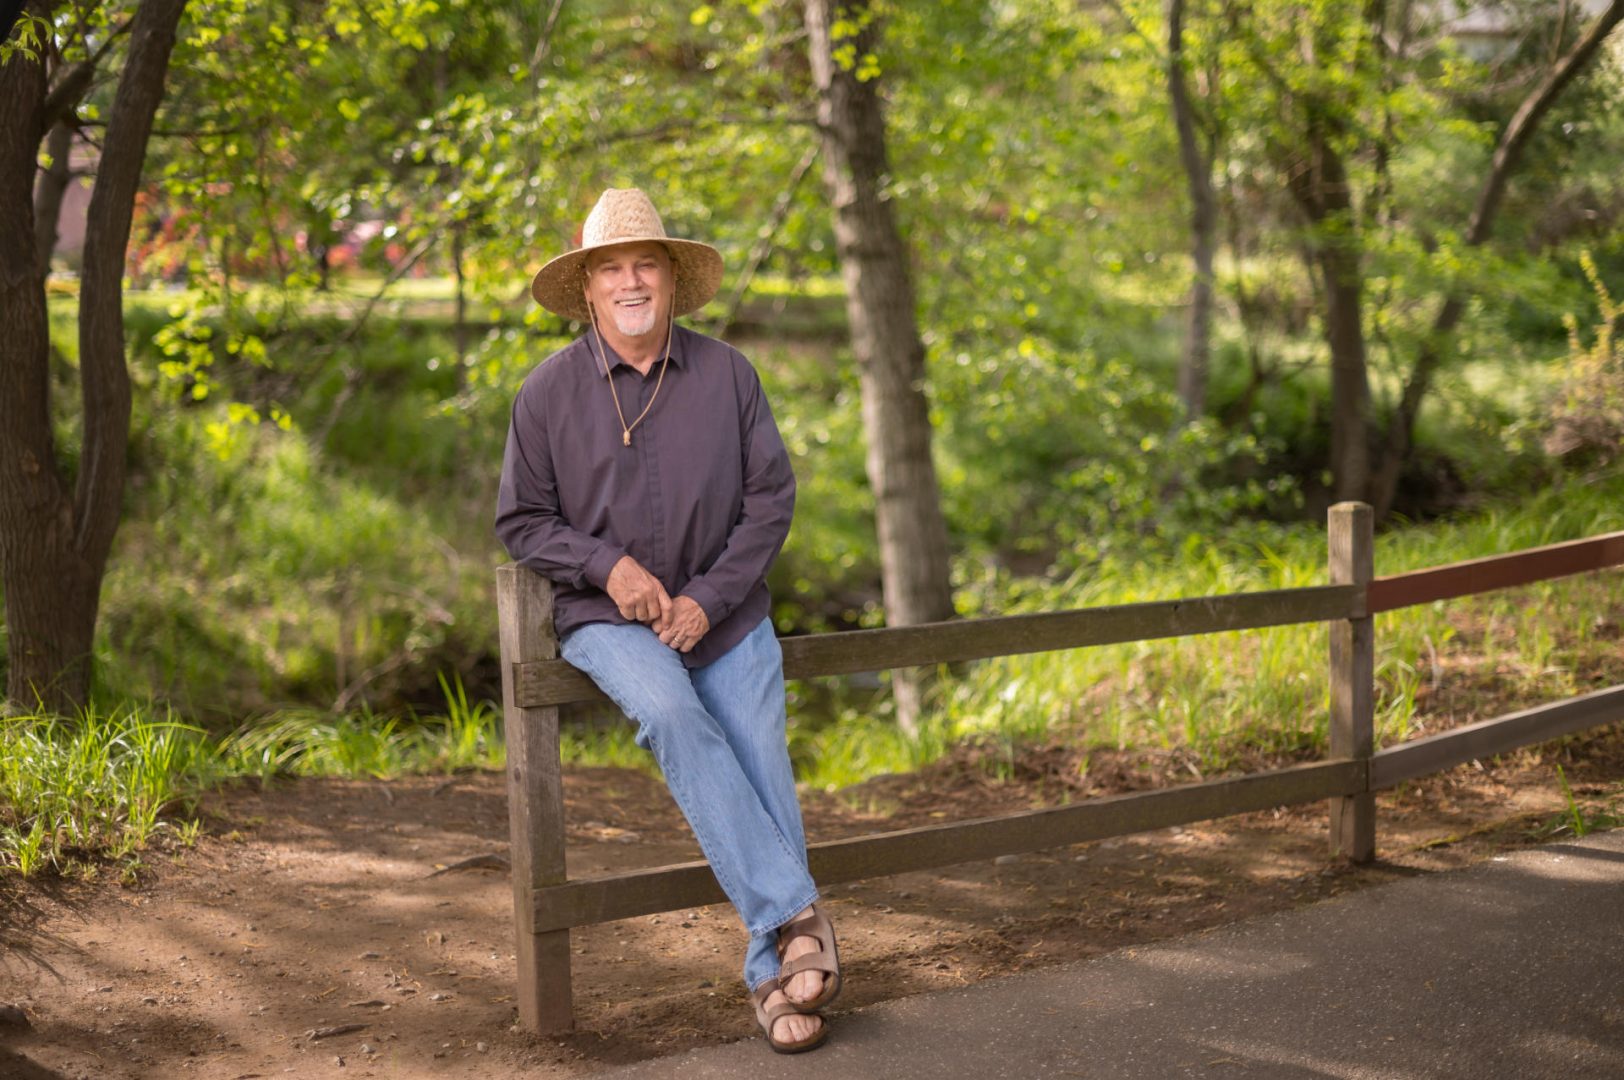 Mark Stemen wears a sun hat as he sits on a wooden fence.